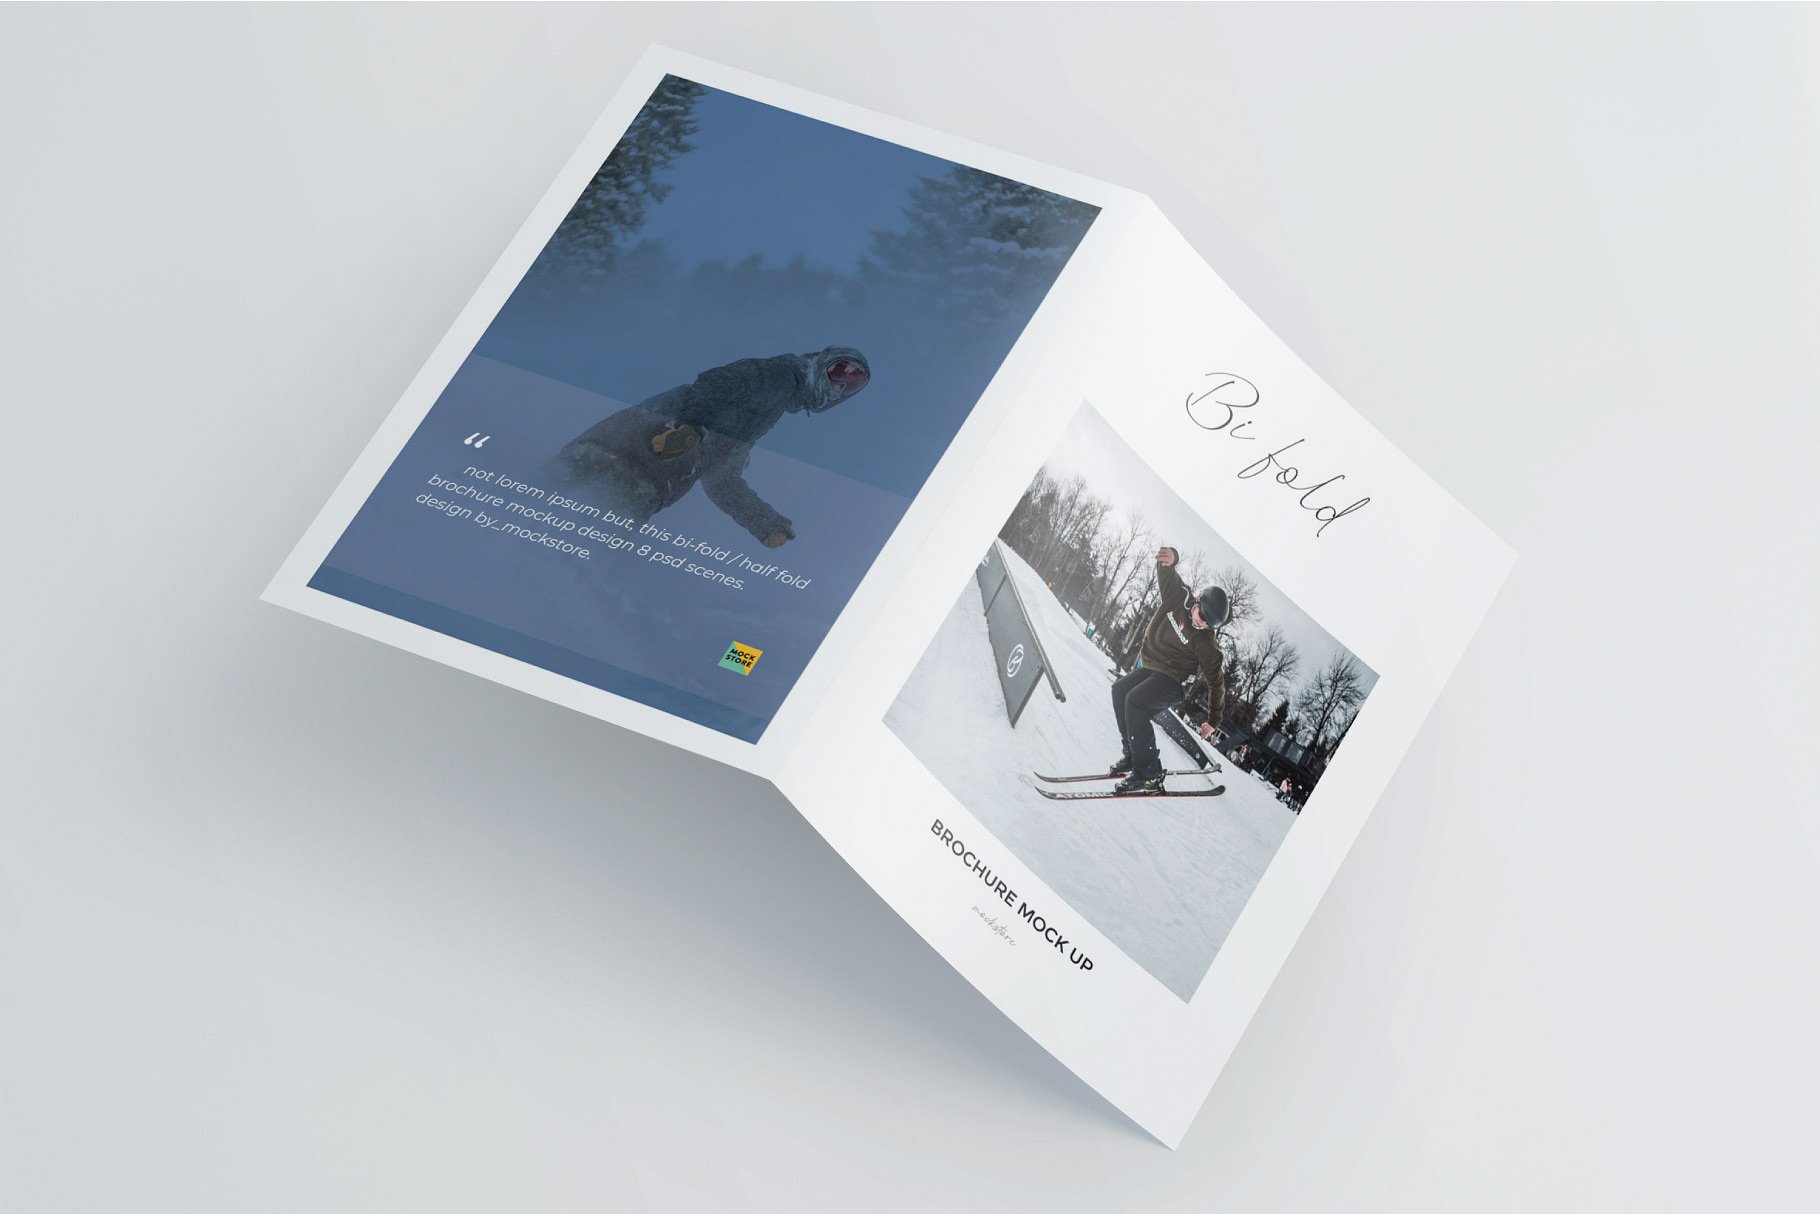 精装画册杂志设计提案展示样机PSD智能贴图模板 A5 Bifold Half-Fold Brochure Mockup插图6